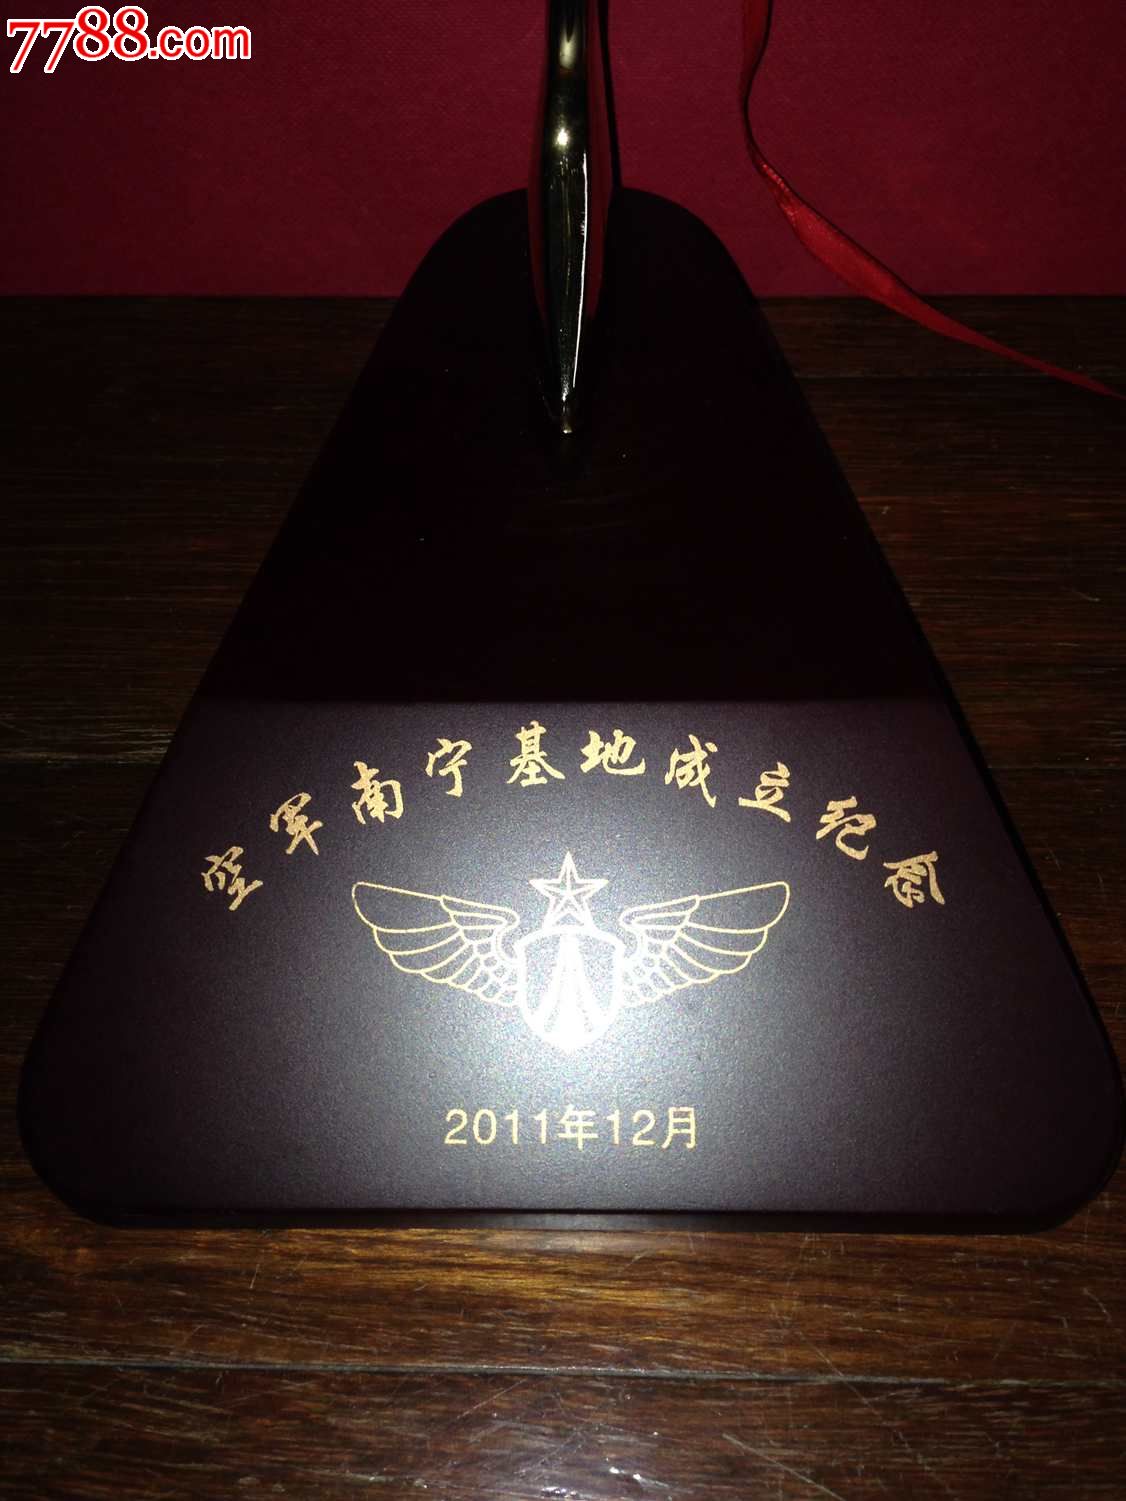 2011年12月空军南宁基地成立纪念*全金属战斗机模型*首长礼品